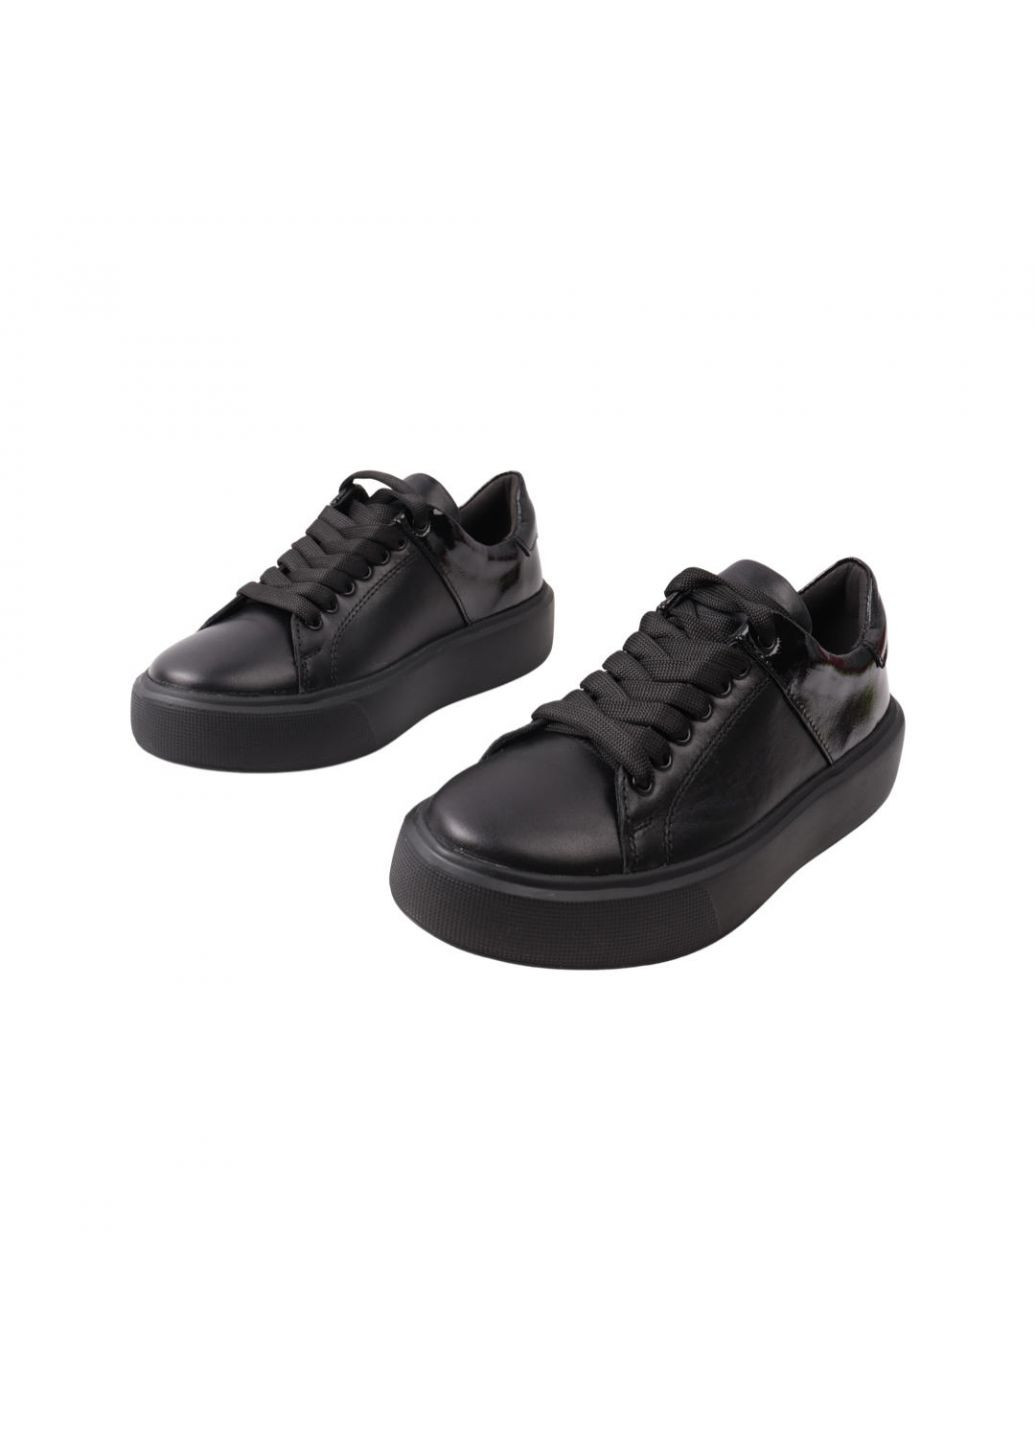 Черные кеды женские maxus черные натуральная кожа Maxus Shoes 78-21DTC